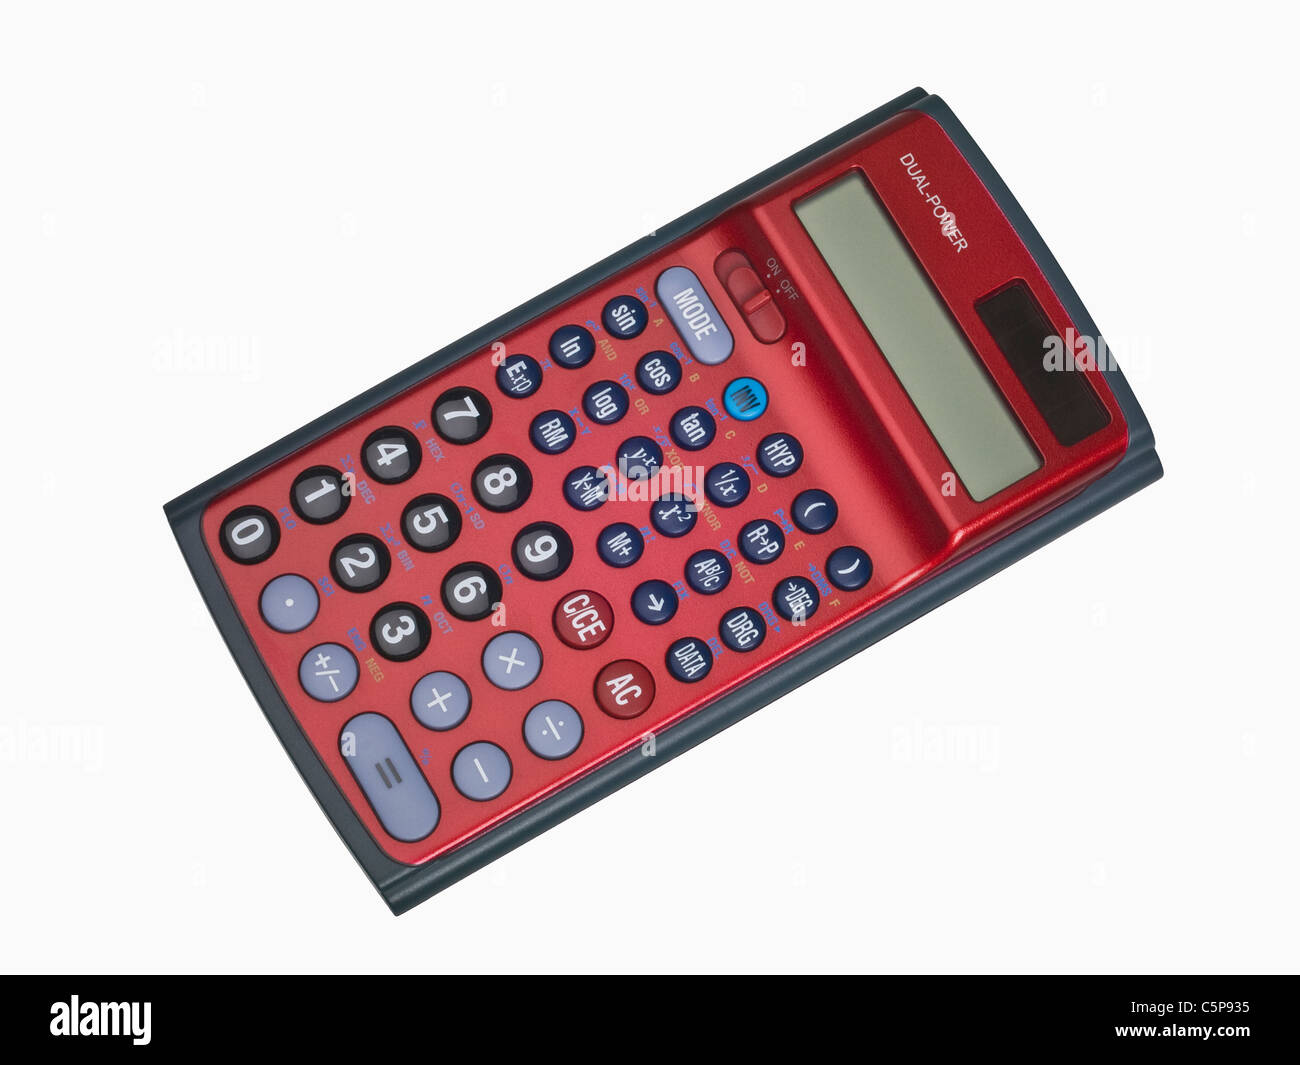 Detailansicht eines Taschenrechners | Dettaglio foto di una calcolatrice tascabile Foto Stock